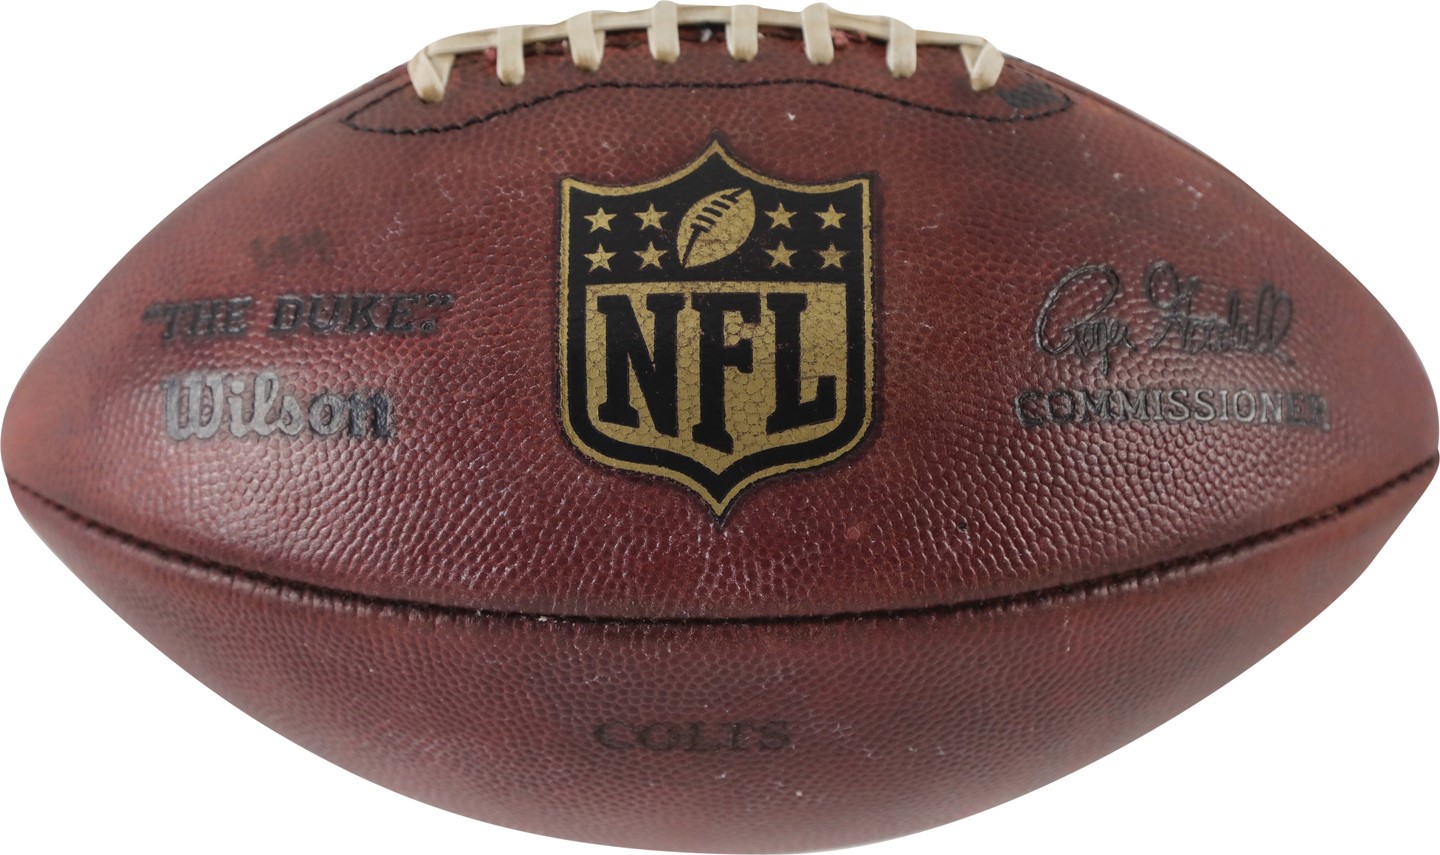 Football - "Deflategate" Game Used Football (NFL Referee Provenance)